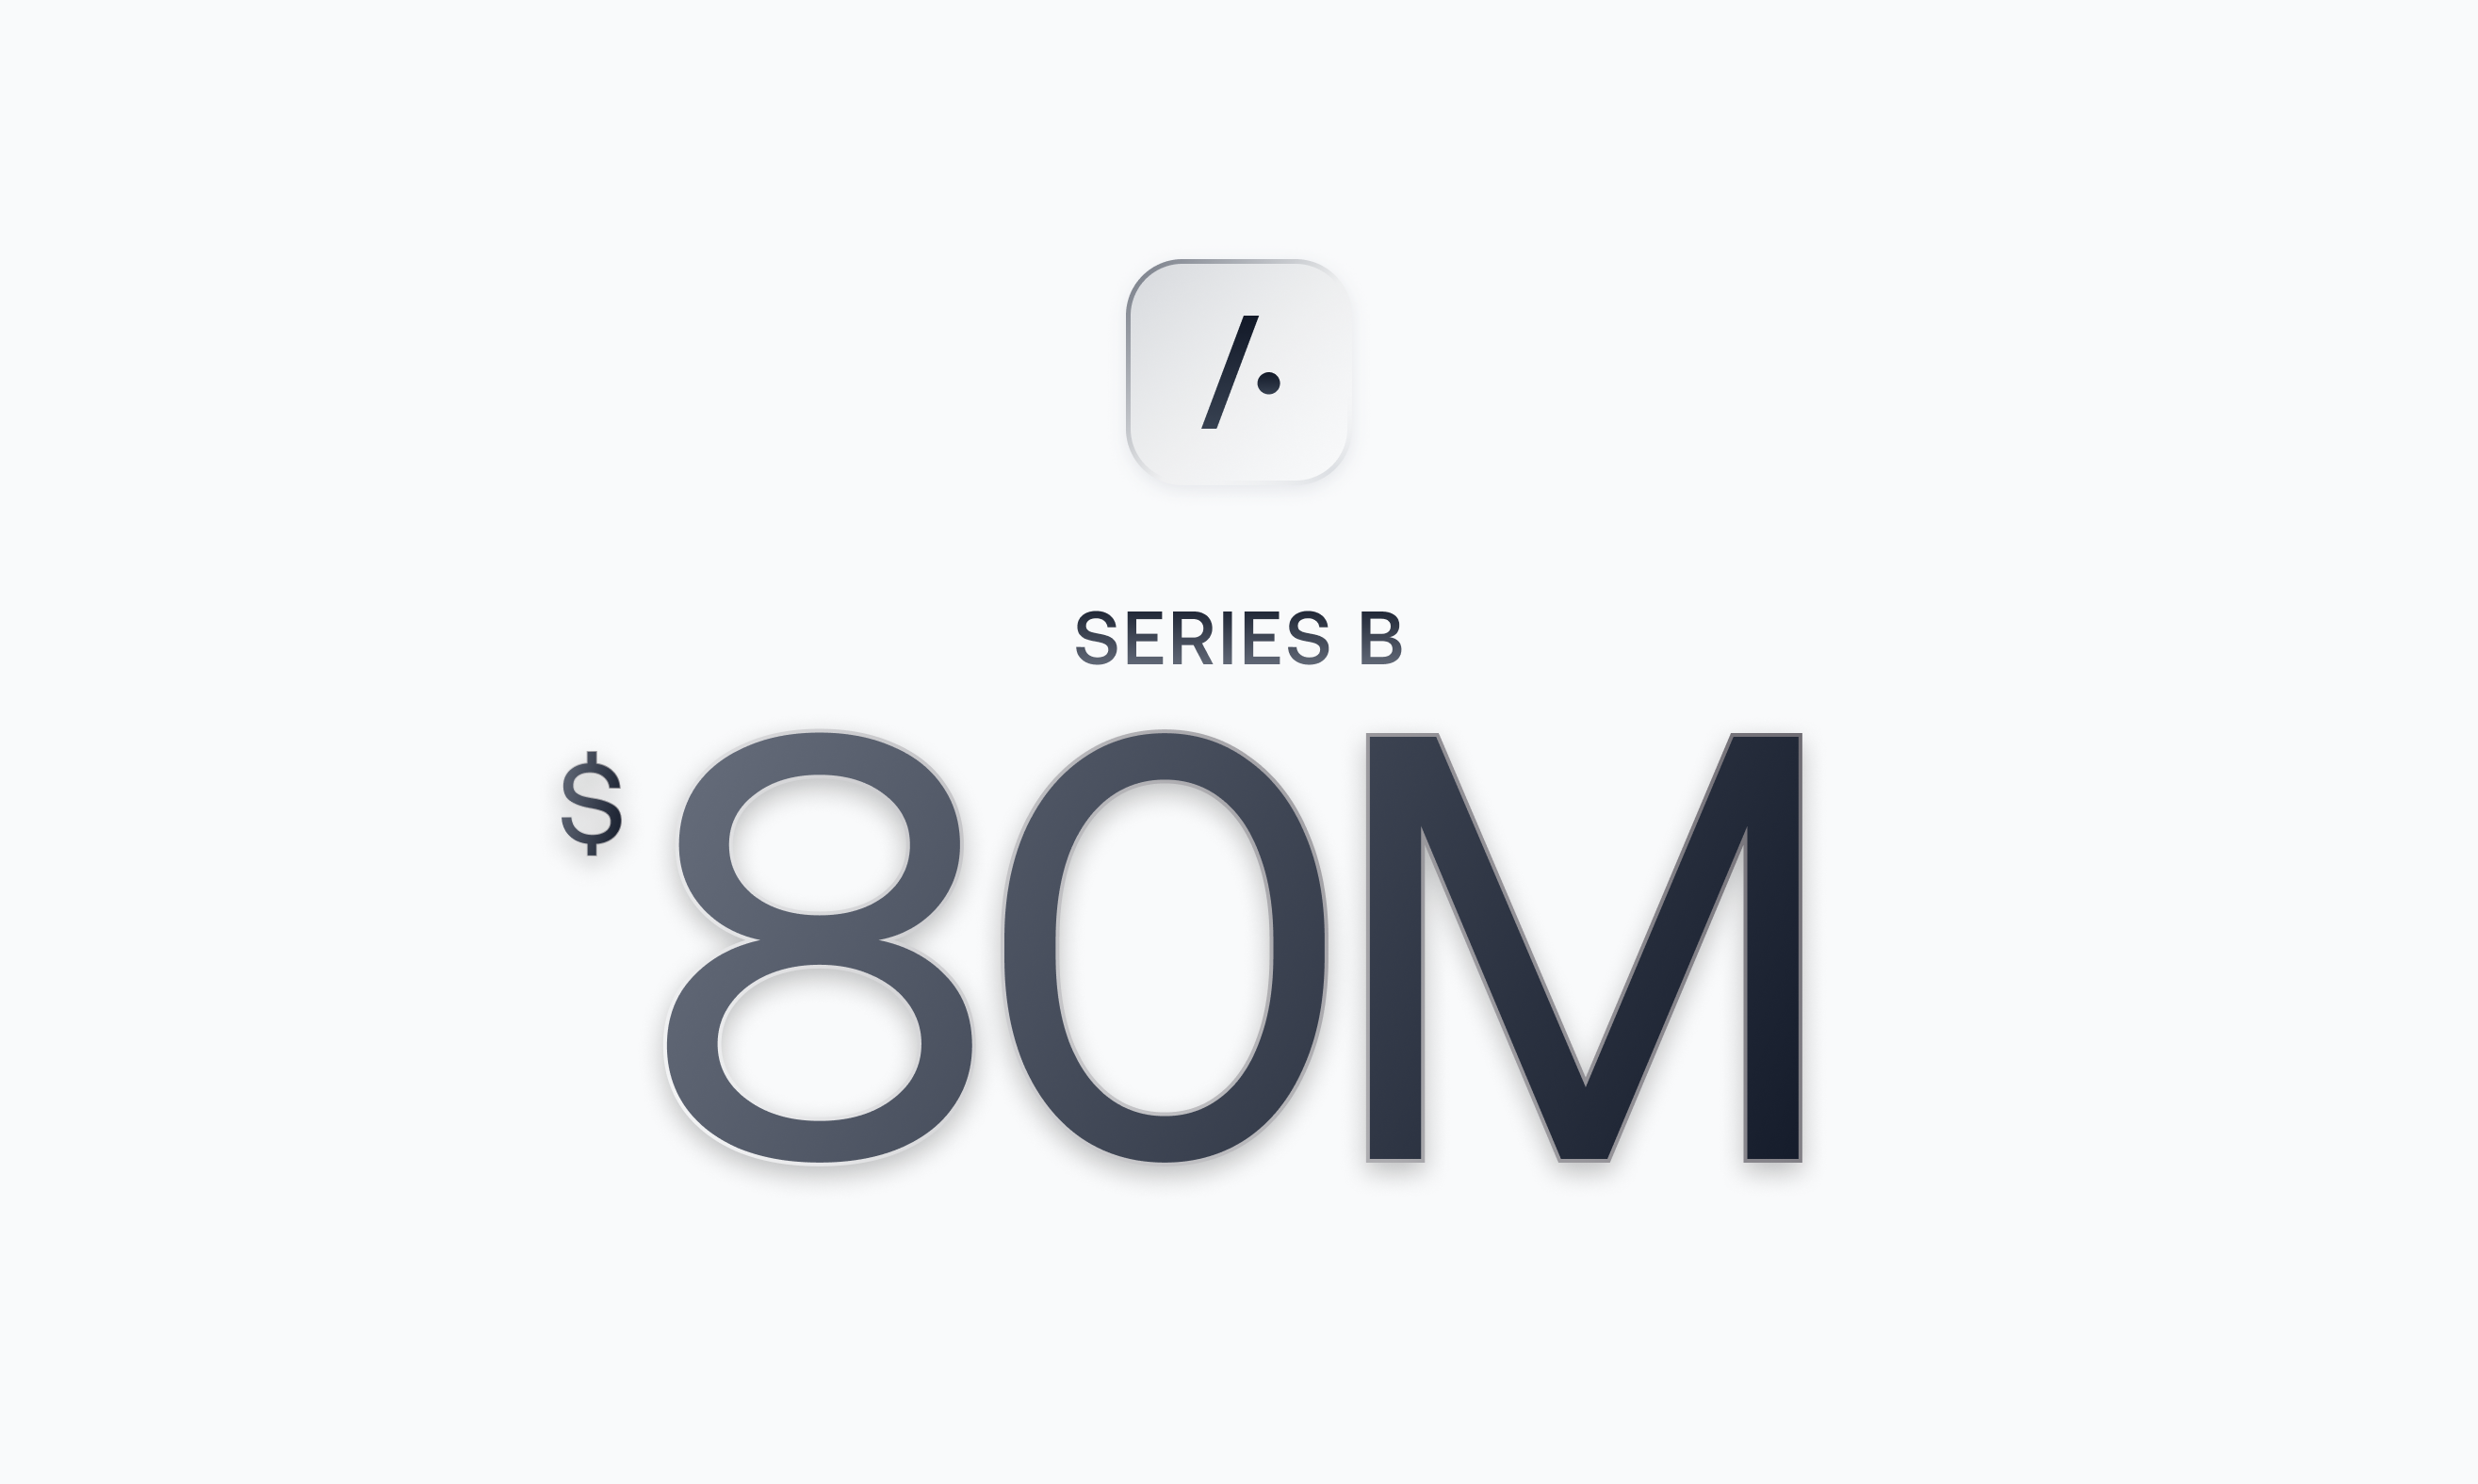 80 millions on series b